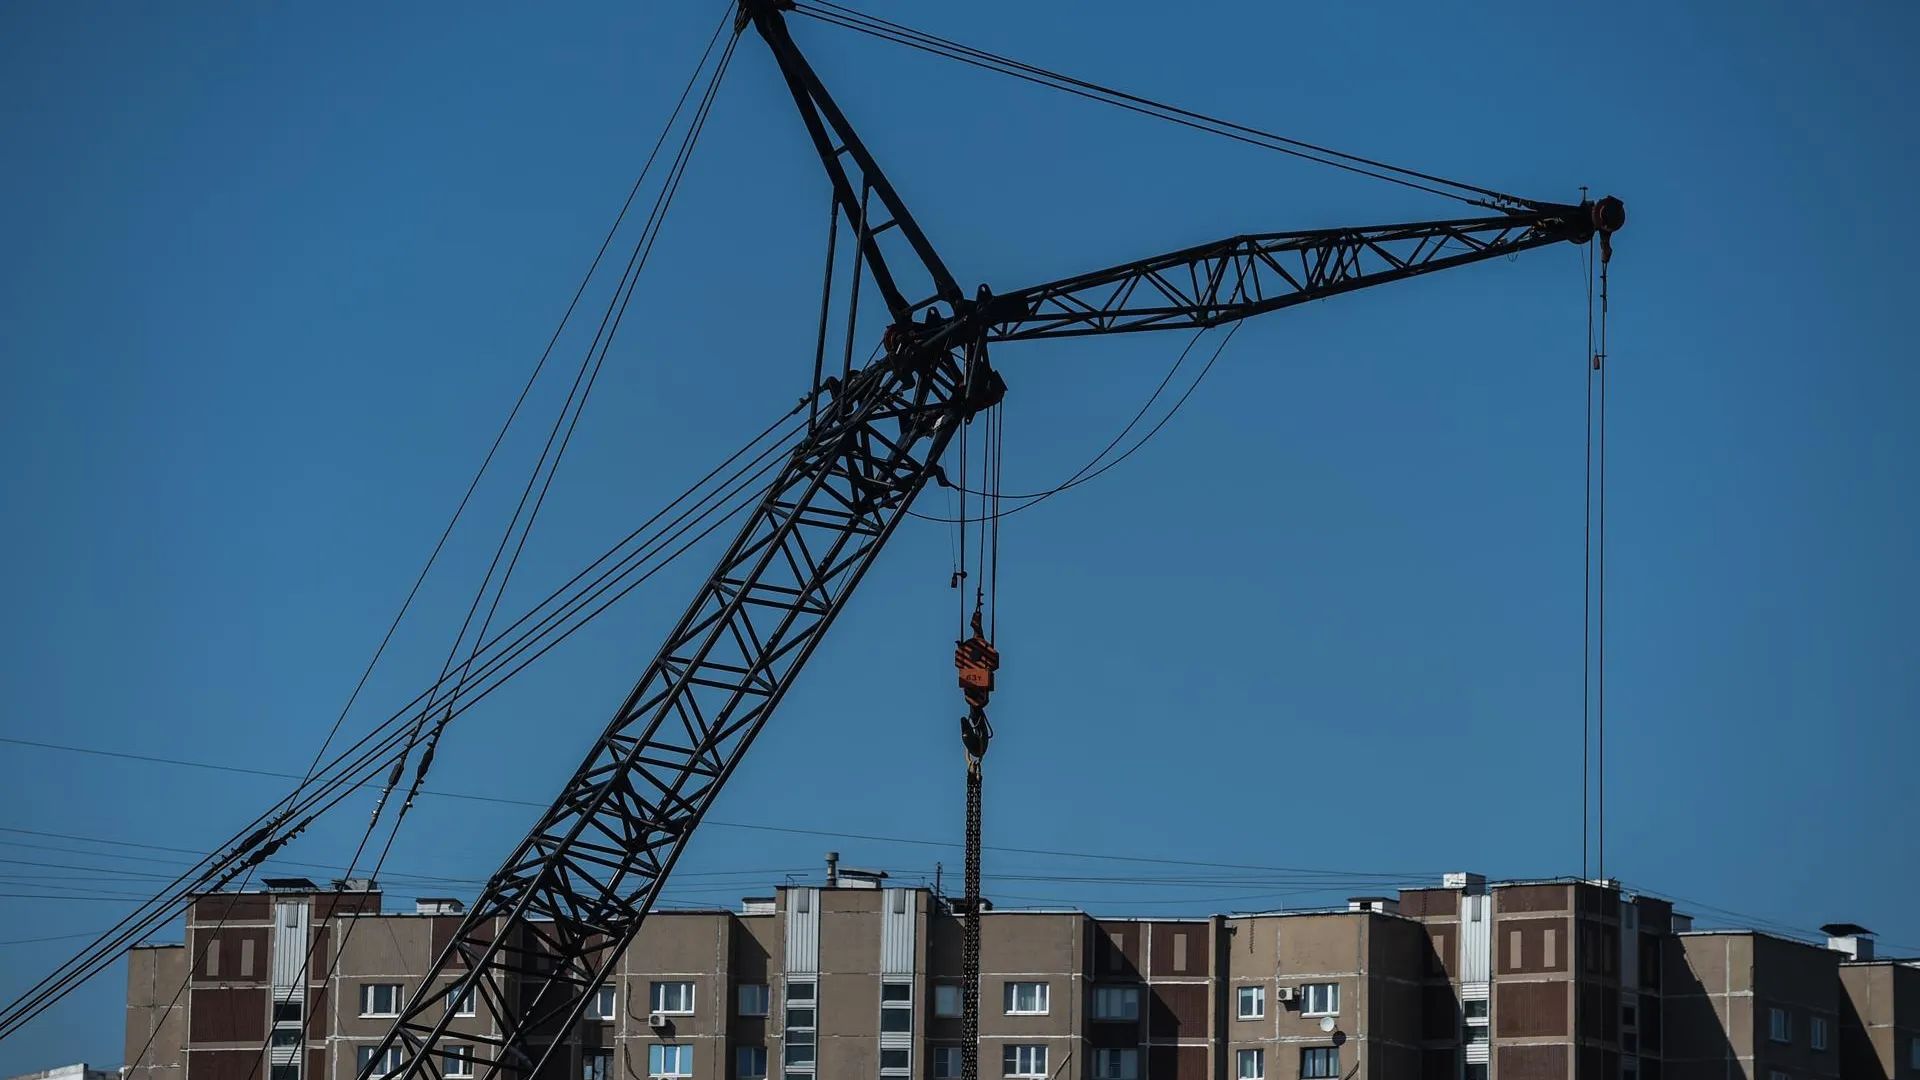 Порядка 150 тыс кв м недвижимости построят рядом с горнолыжным спуском на юге Москвы